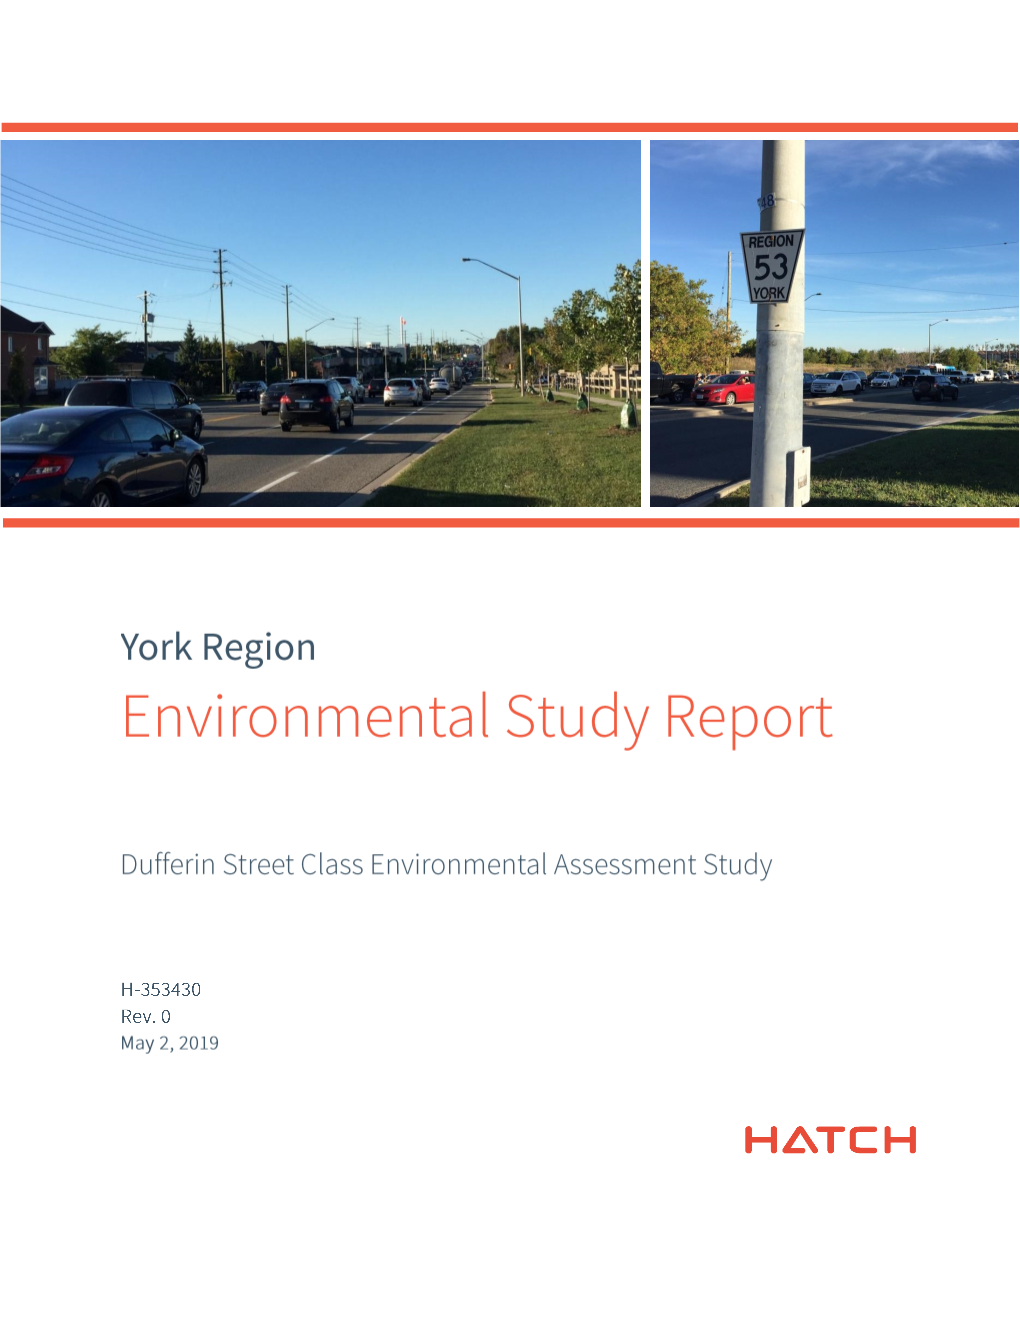 York Region Dufferin Street Class Environmental Assessment Study